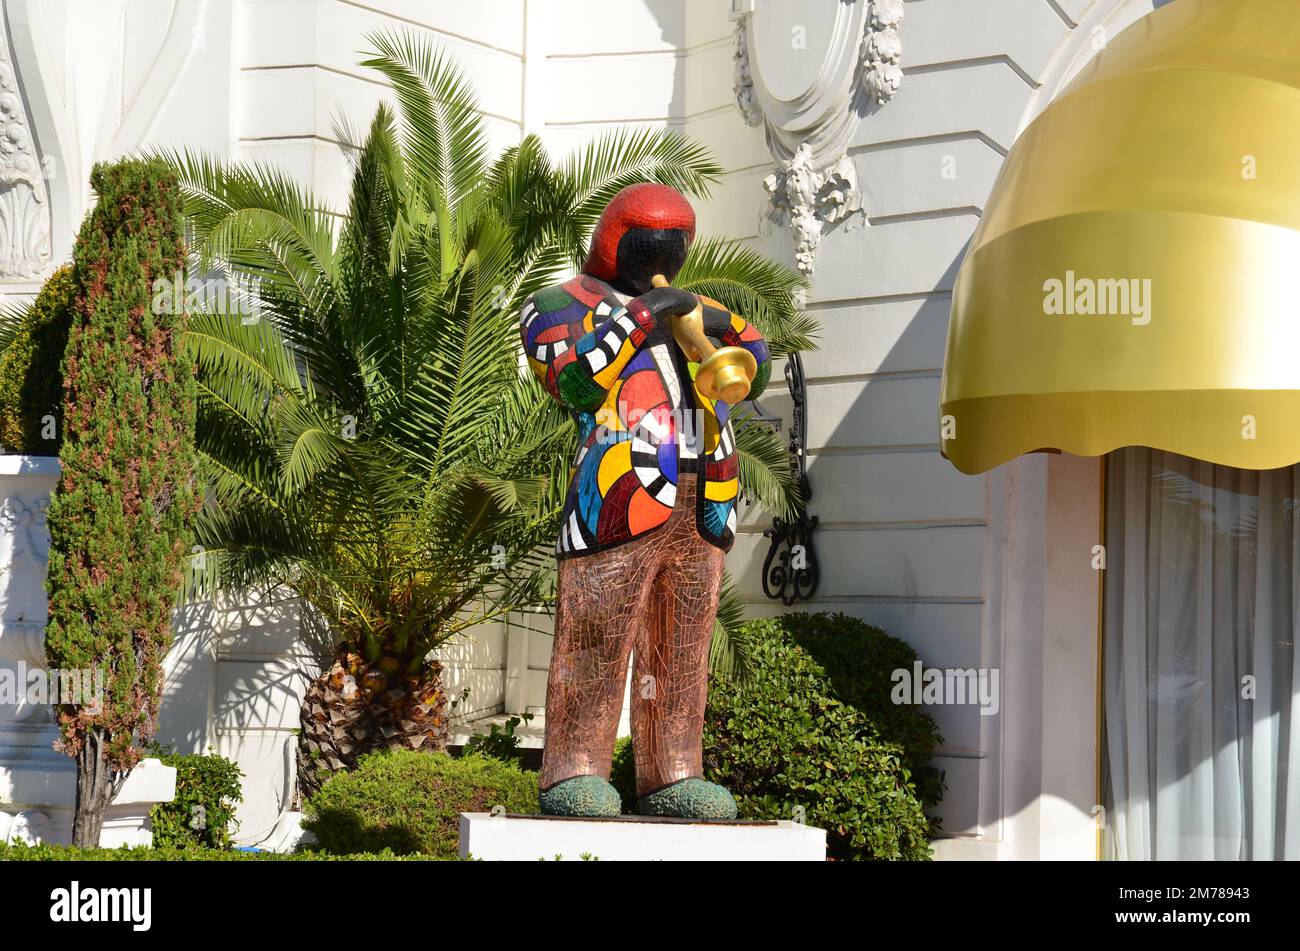 France, côte d'azur, Nice, la statue de trompeter devant l'hôtel Negresco est une œuvre de Niki de Saint Phalle, sculpteur franco-américain. Banque D'Images